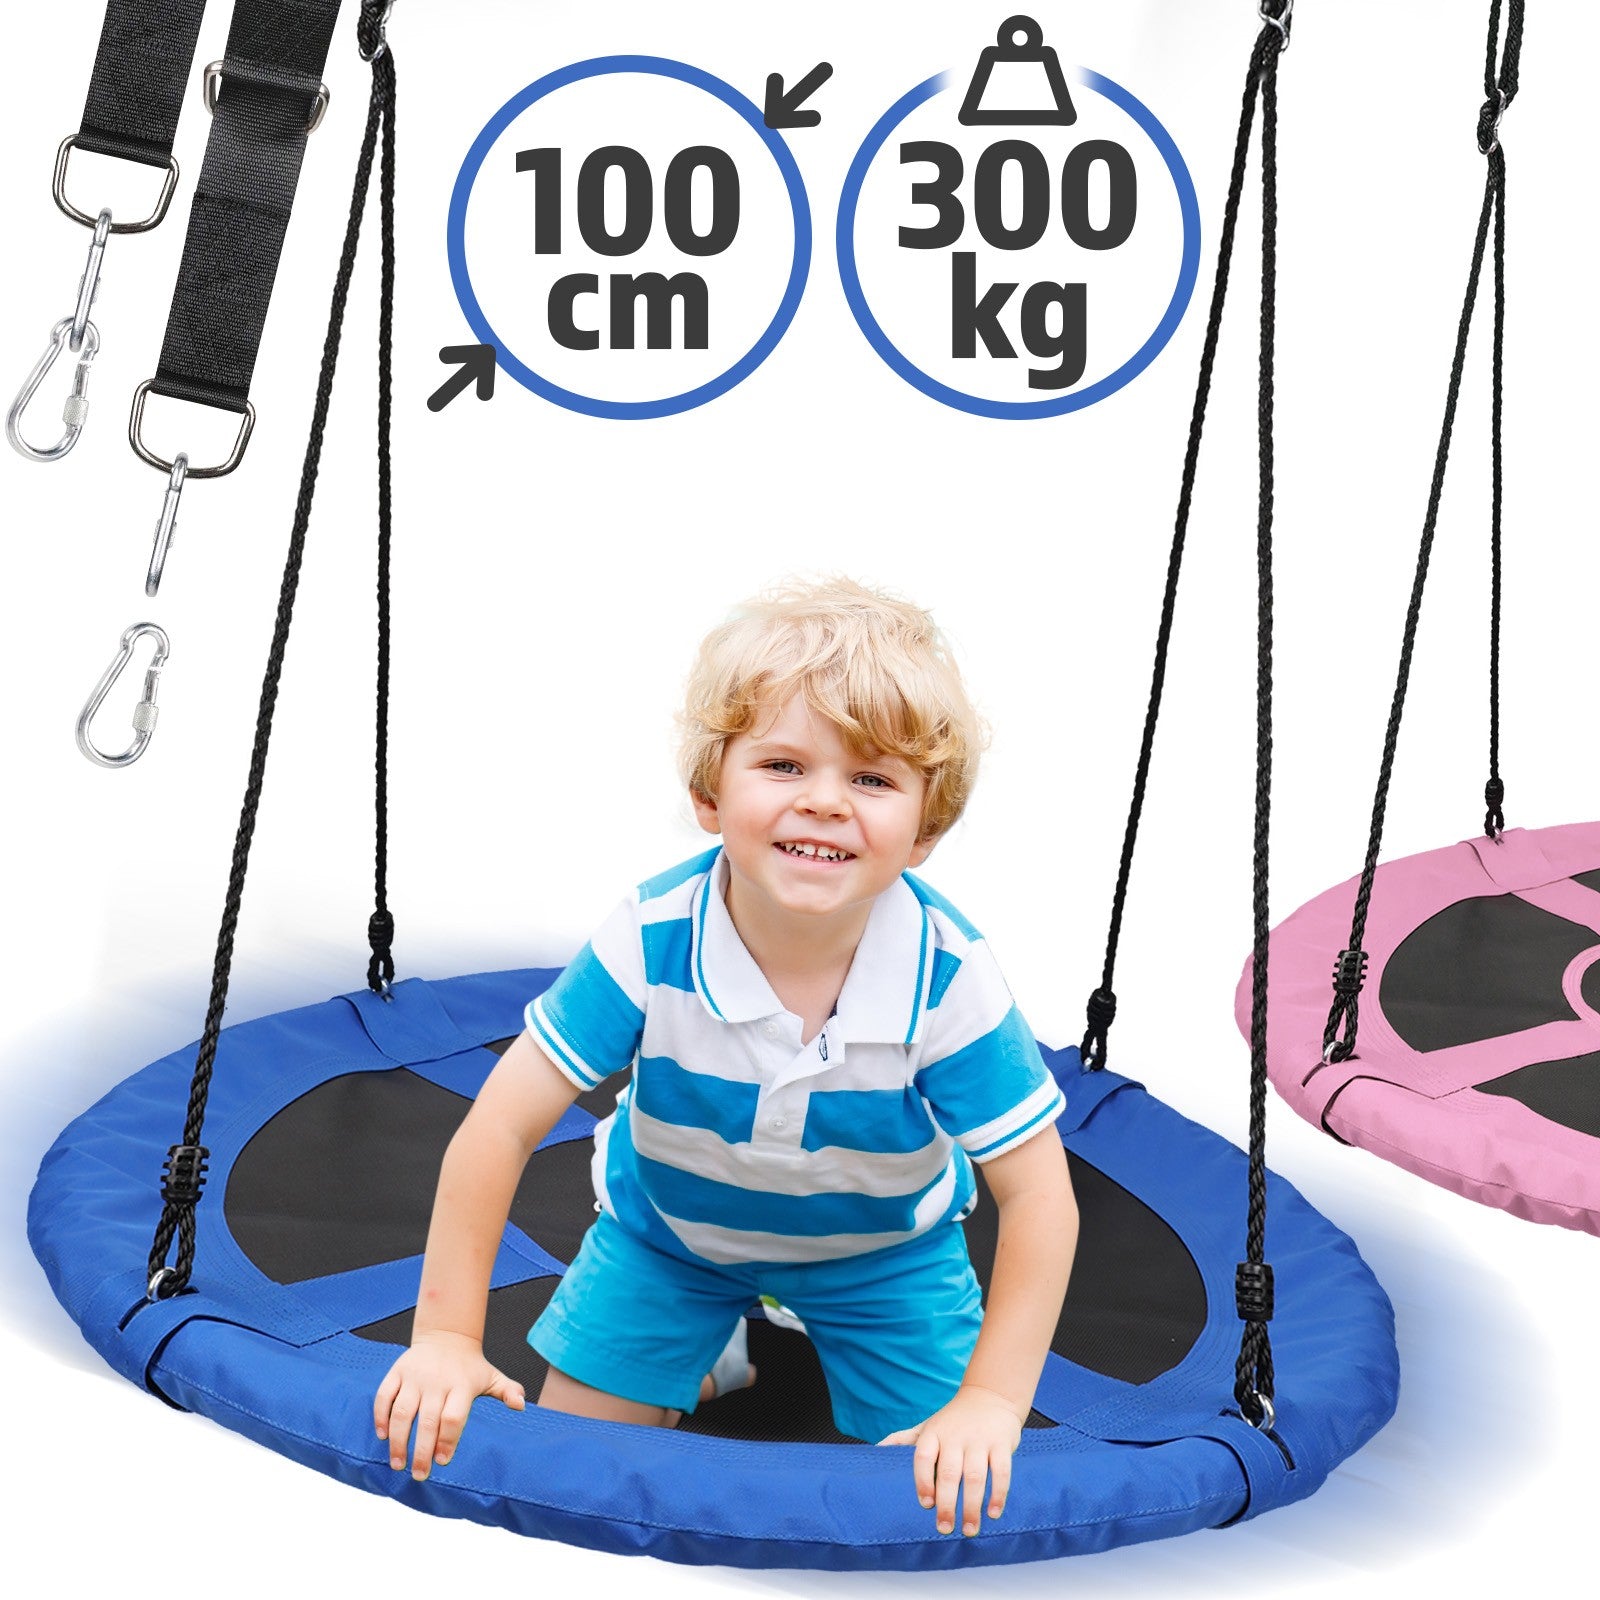 Se Gynge til børn/voksne, udendørs/indendørs, op til 300 kg bæreevne, Ø 100 cm, Oxford stof, blå hos Lammeuld.dk